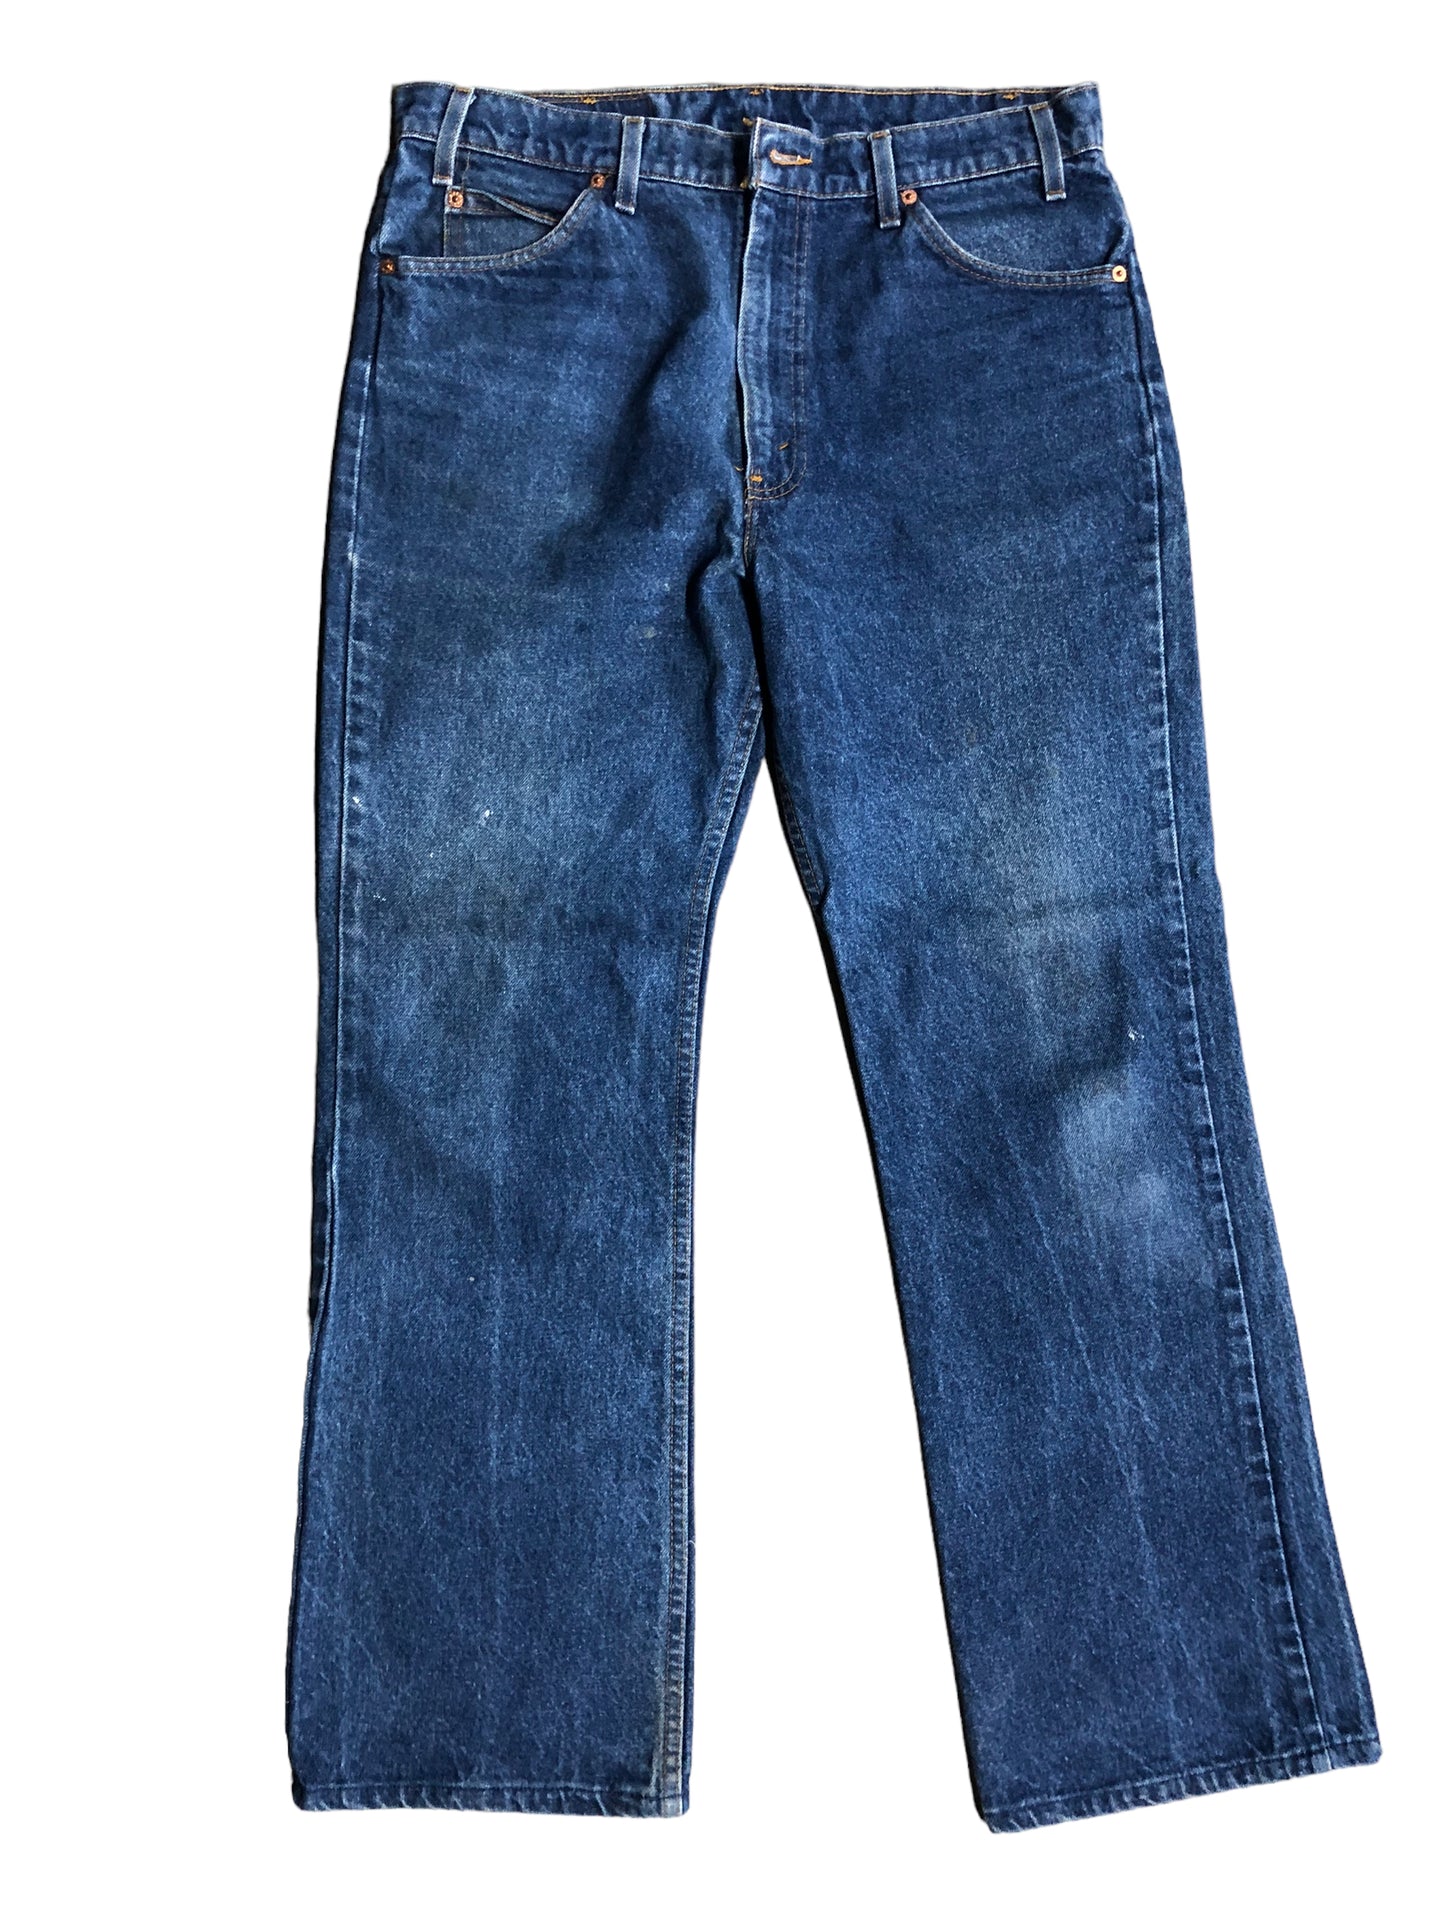 VTG Levi Medium Wash Jeans Sz 36/32